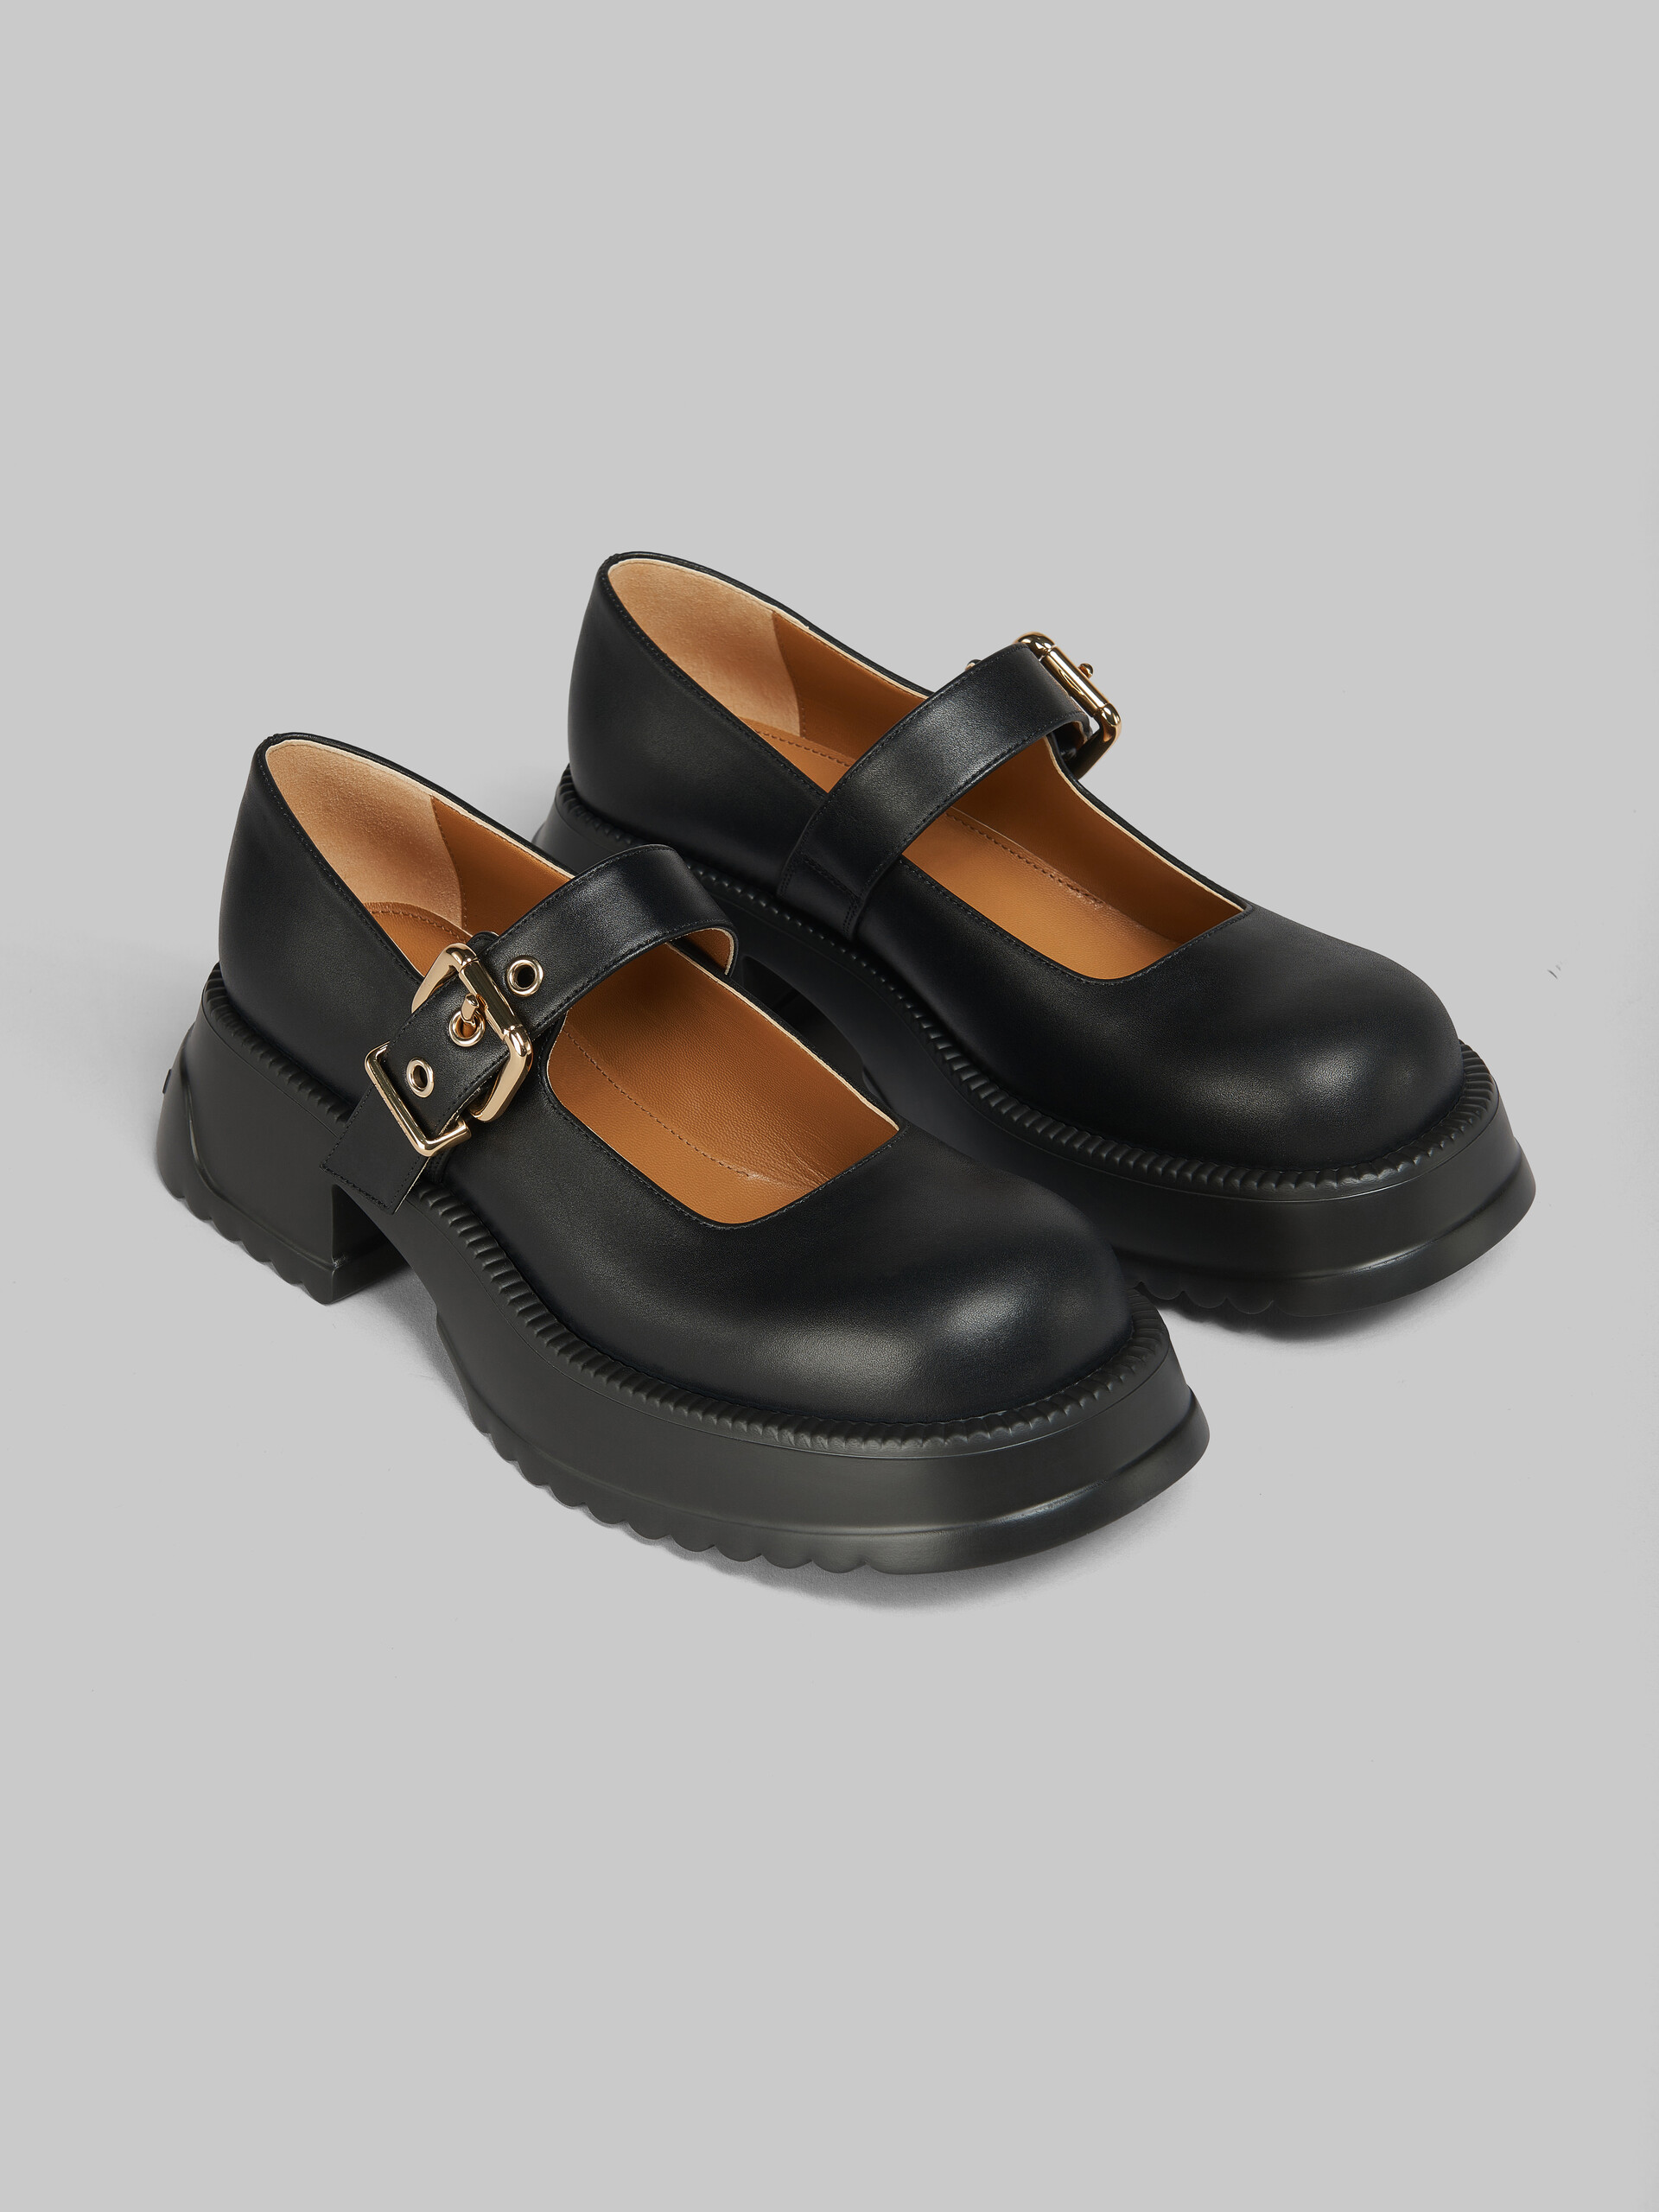 Chaussures Mary Jane en cuir noir avec semelle à plateforme - Sneakers - Image 5